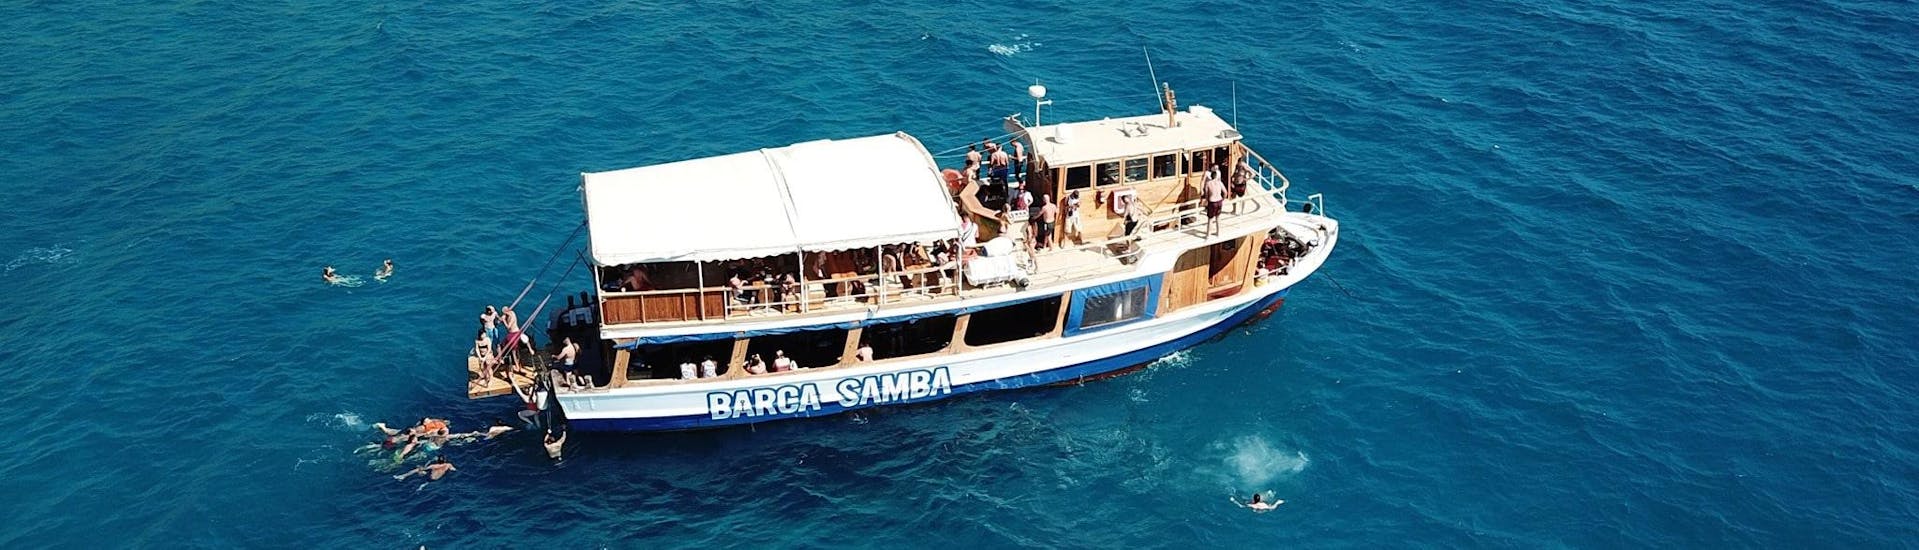 Een boottocht gaat rond Palma met Barca Samba.